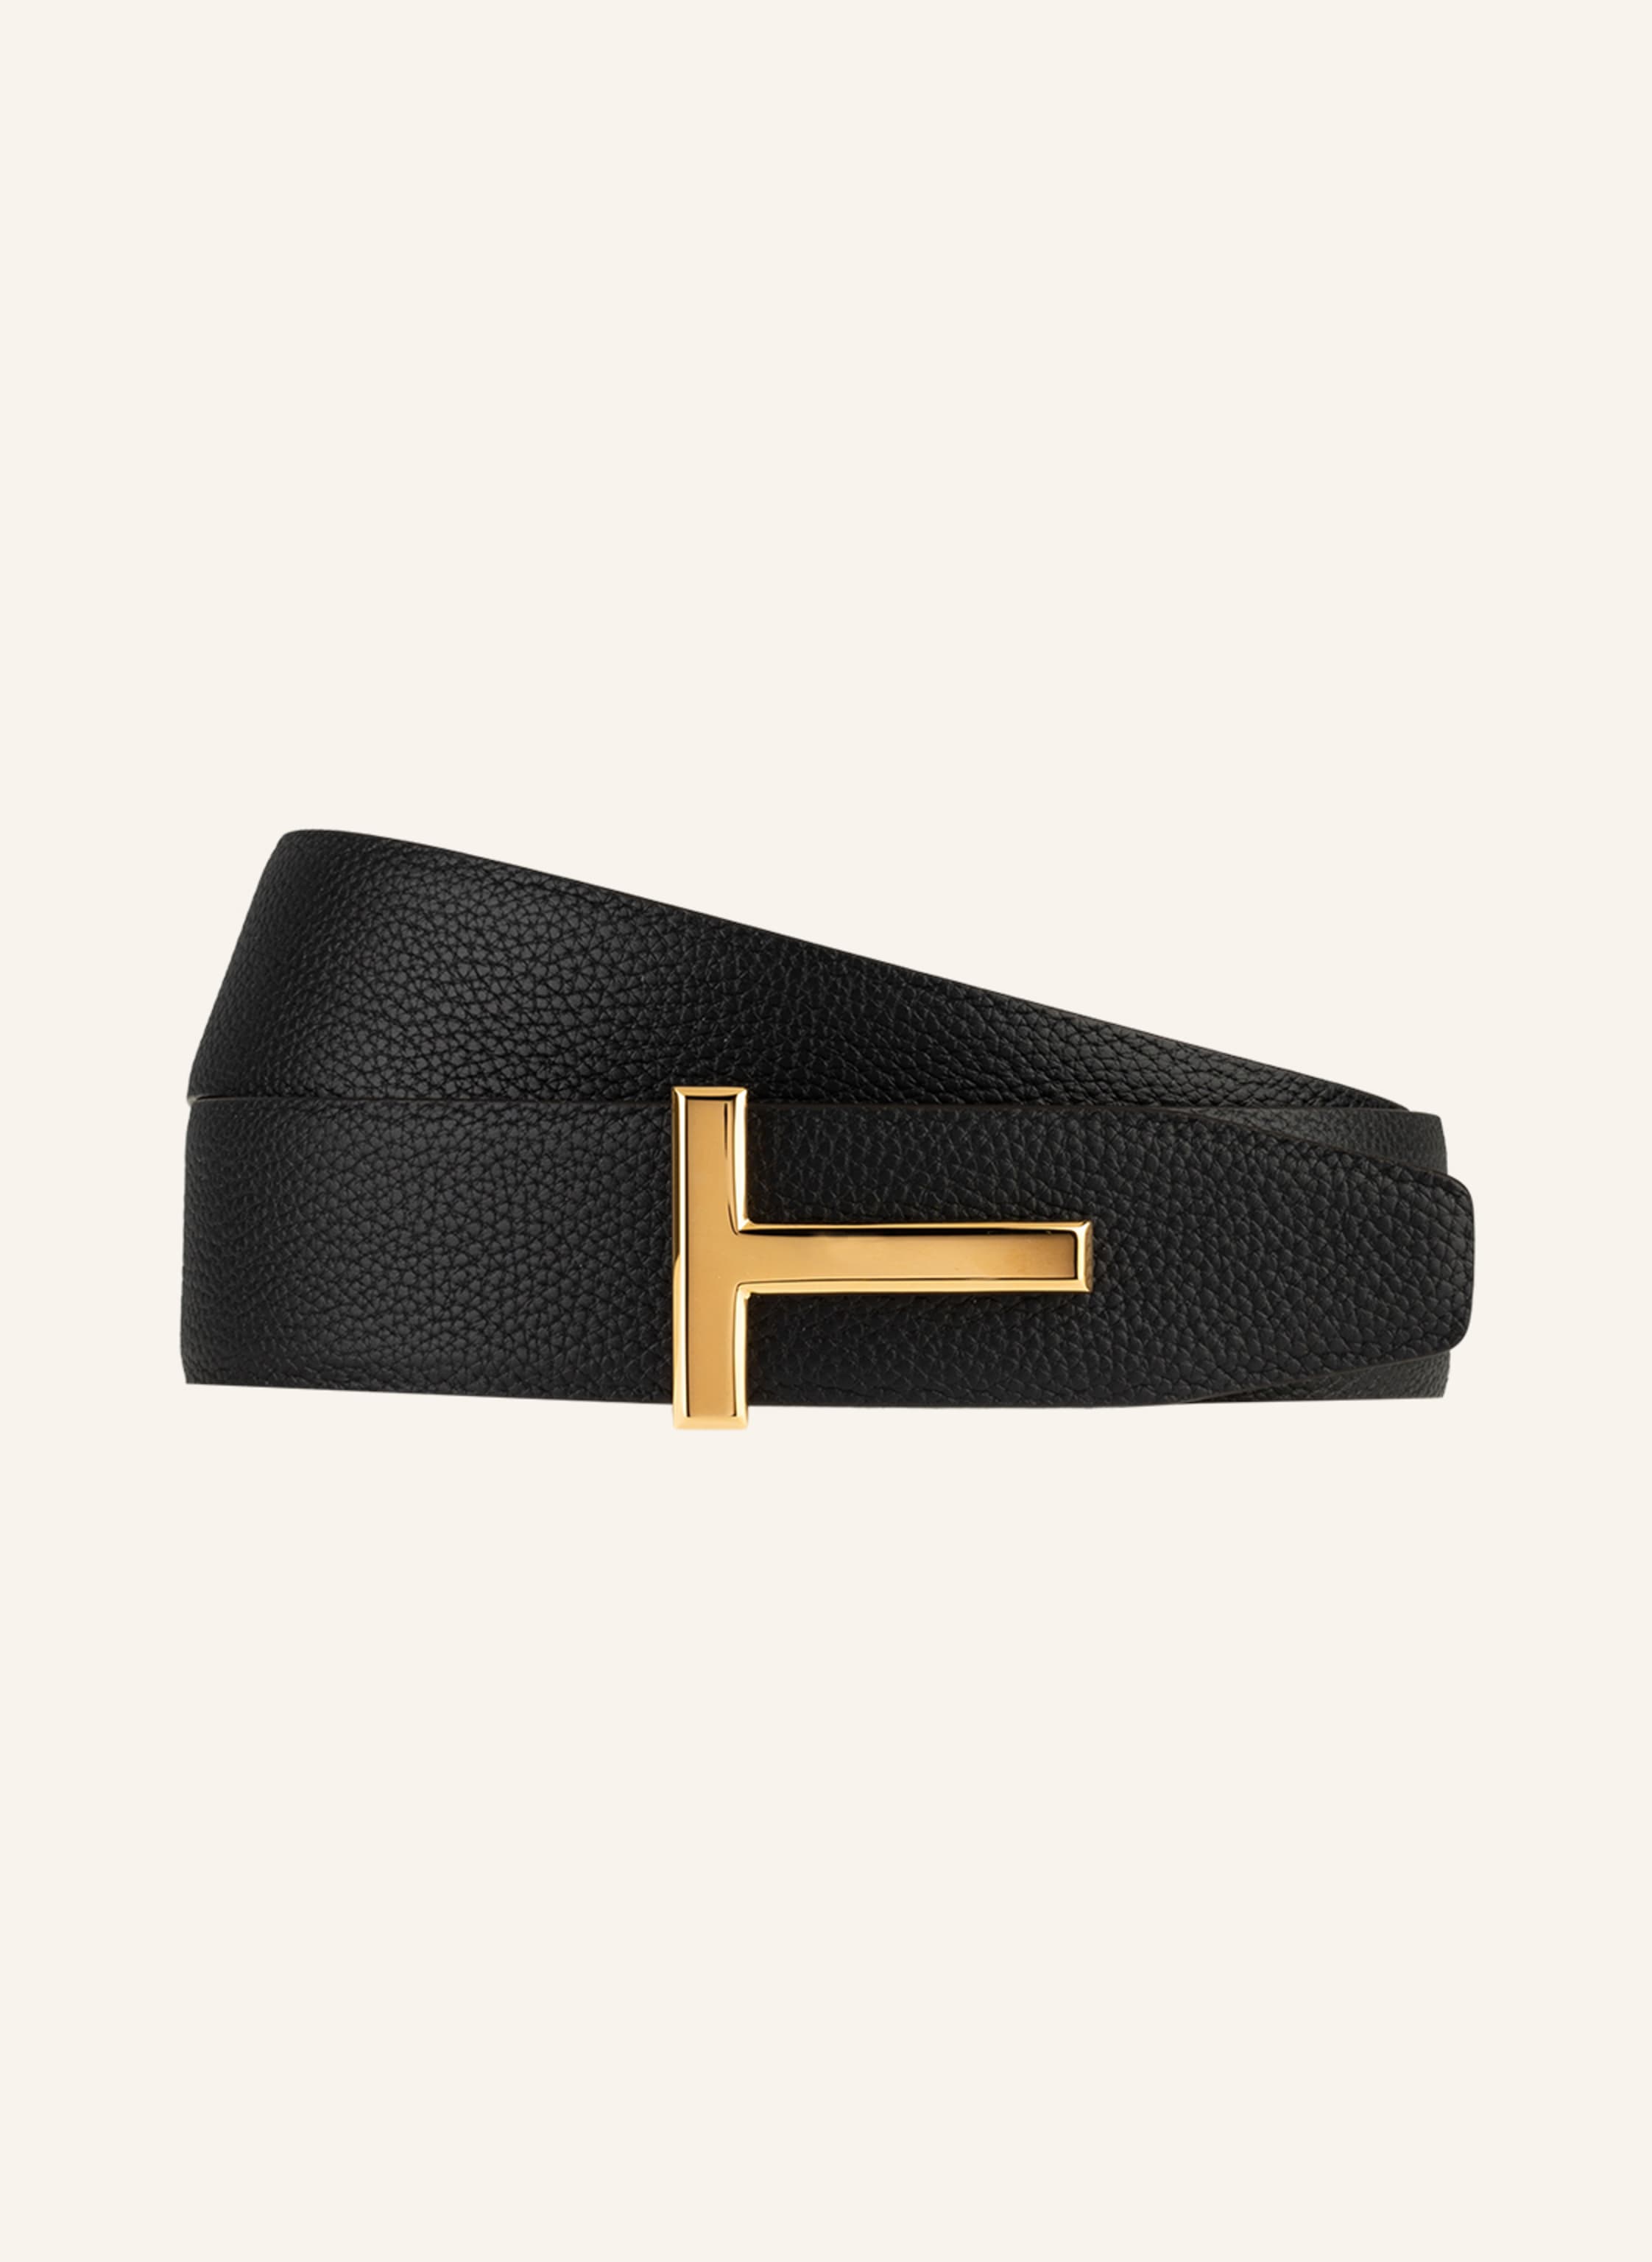 TOM FORD Leather belt in black | Breuninger